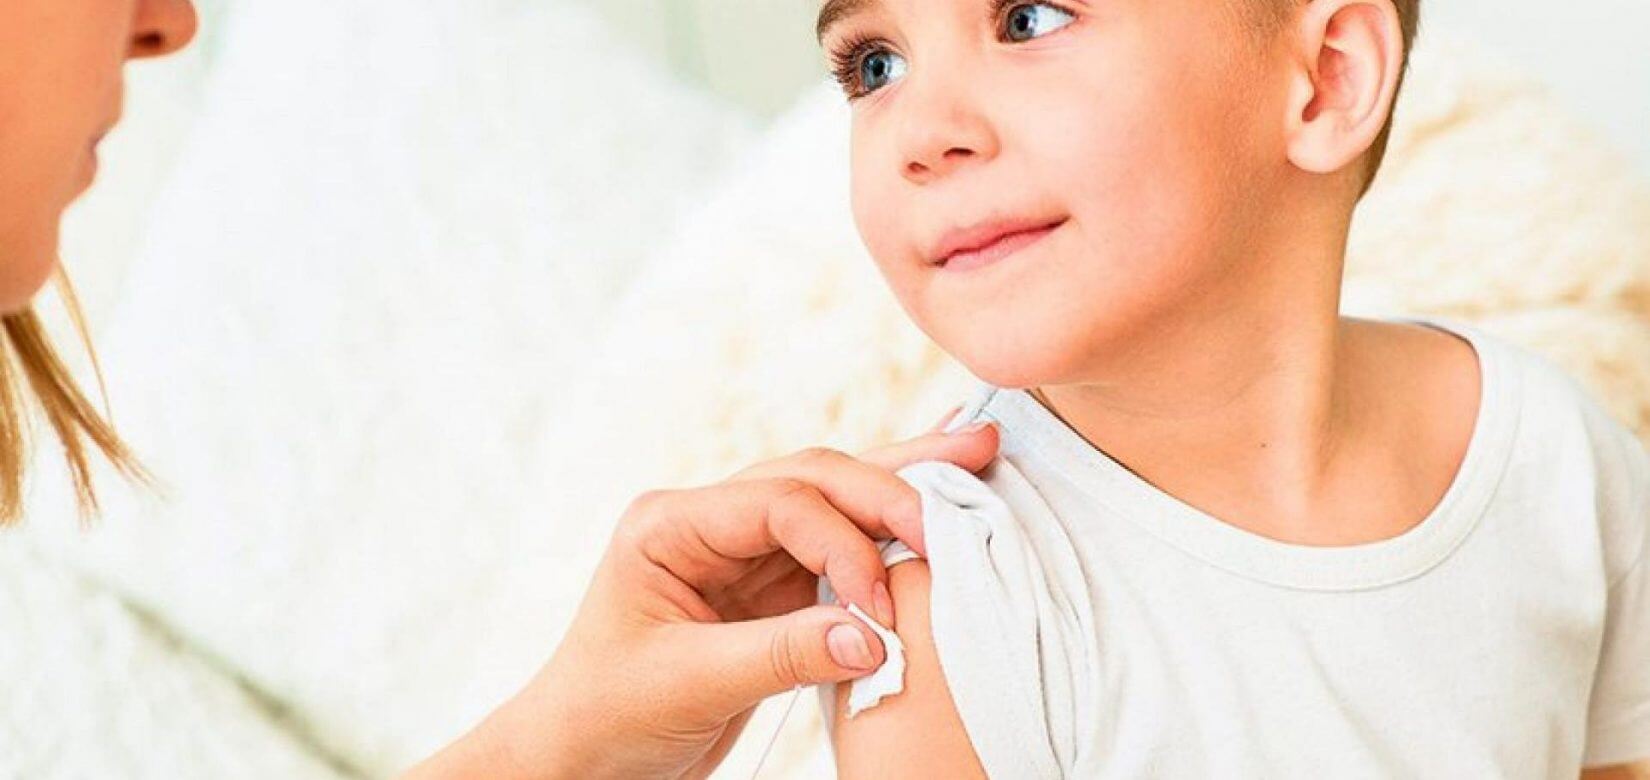 Κορονοϊός: Το εμβόλιο σε παιδιά μειώνει τις πιθανότητες long covid